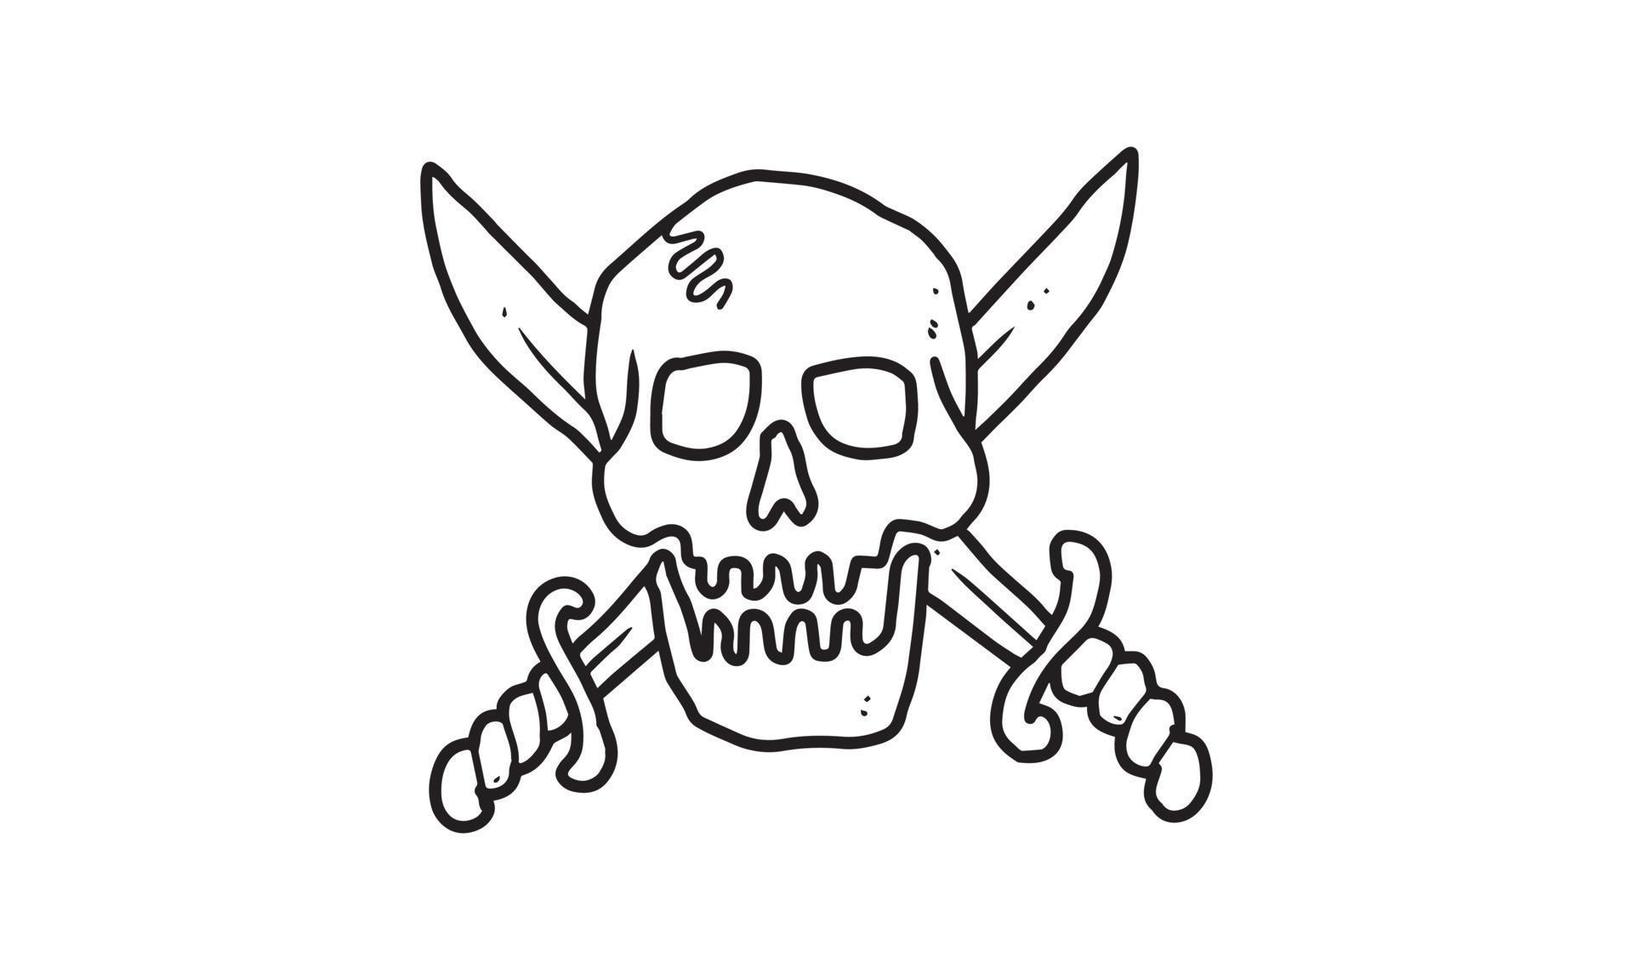 piraat schedel met zwaard geïsoleerd op een witte achtergrond. geschetste cartoontekening van griezelig, gotisch, doodspictogram voor tatoeage, poster, halloween-thema, enz. vector